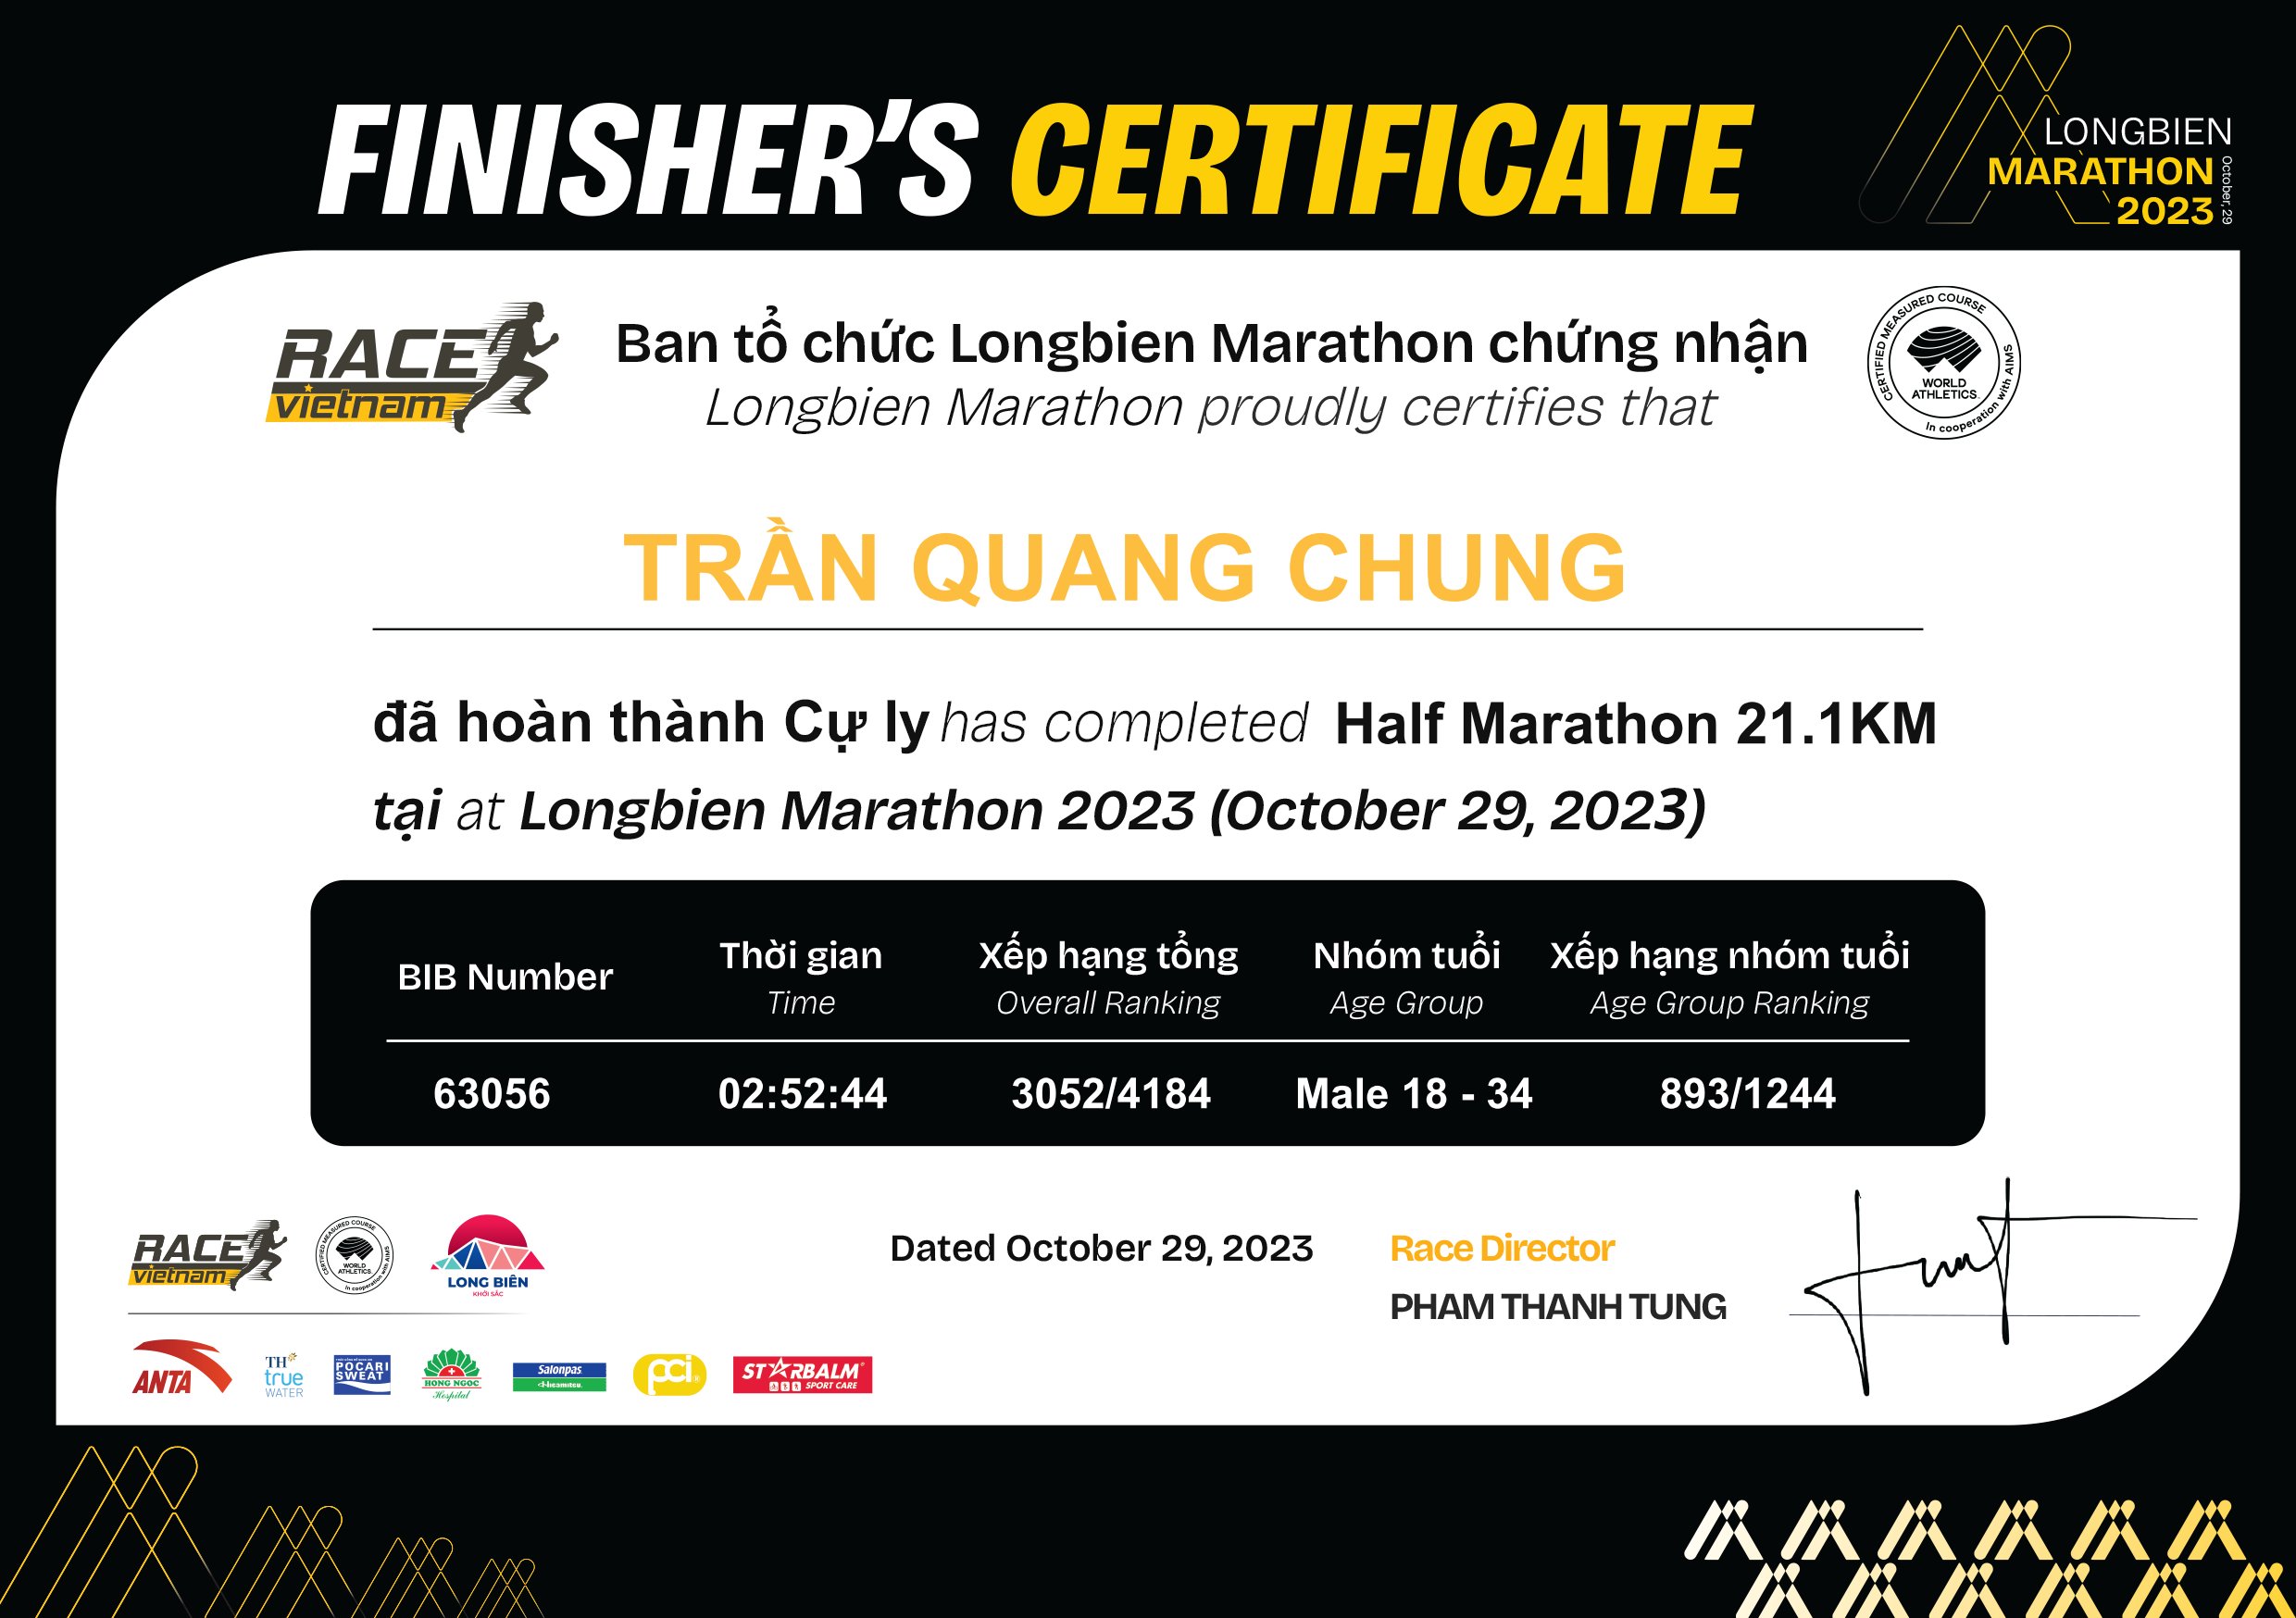 63056 - Trần Quang Chung